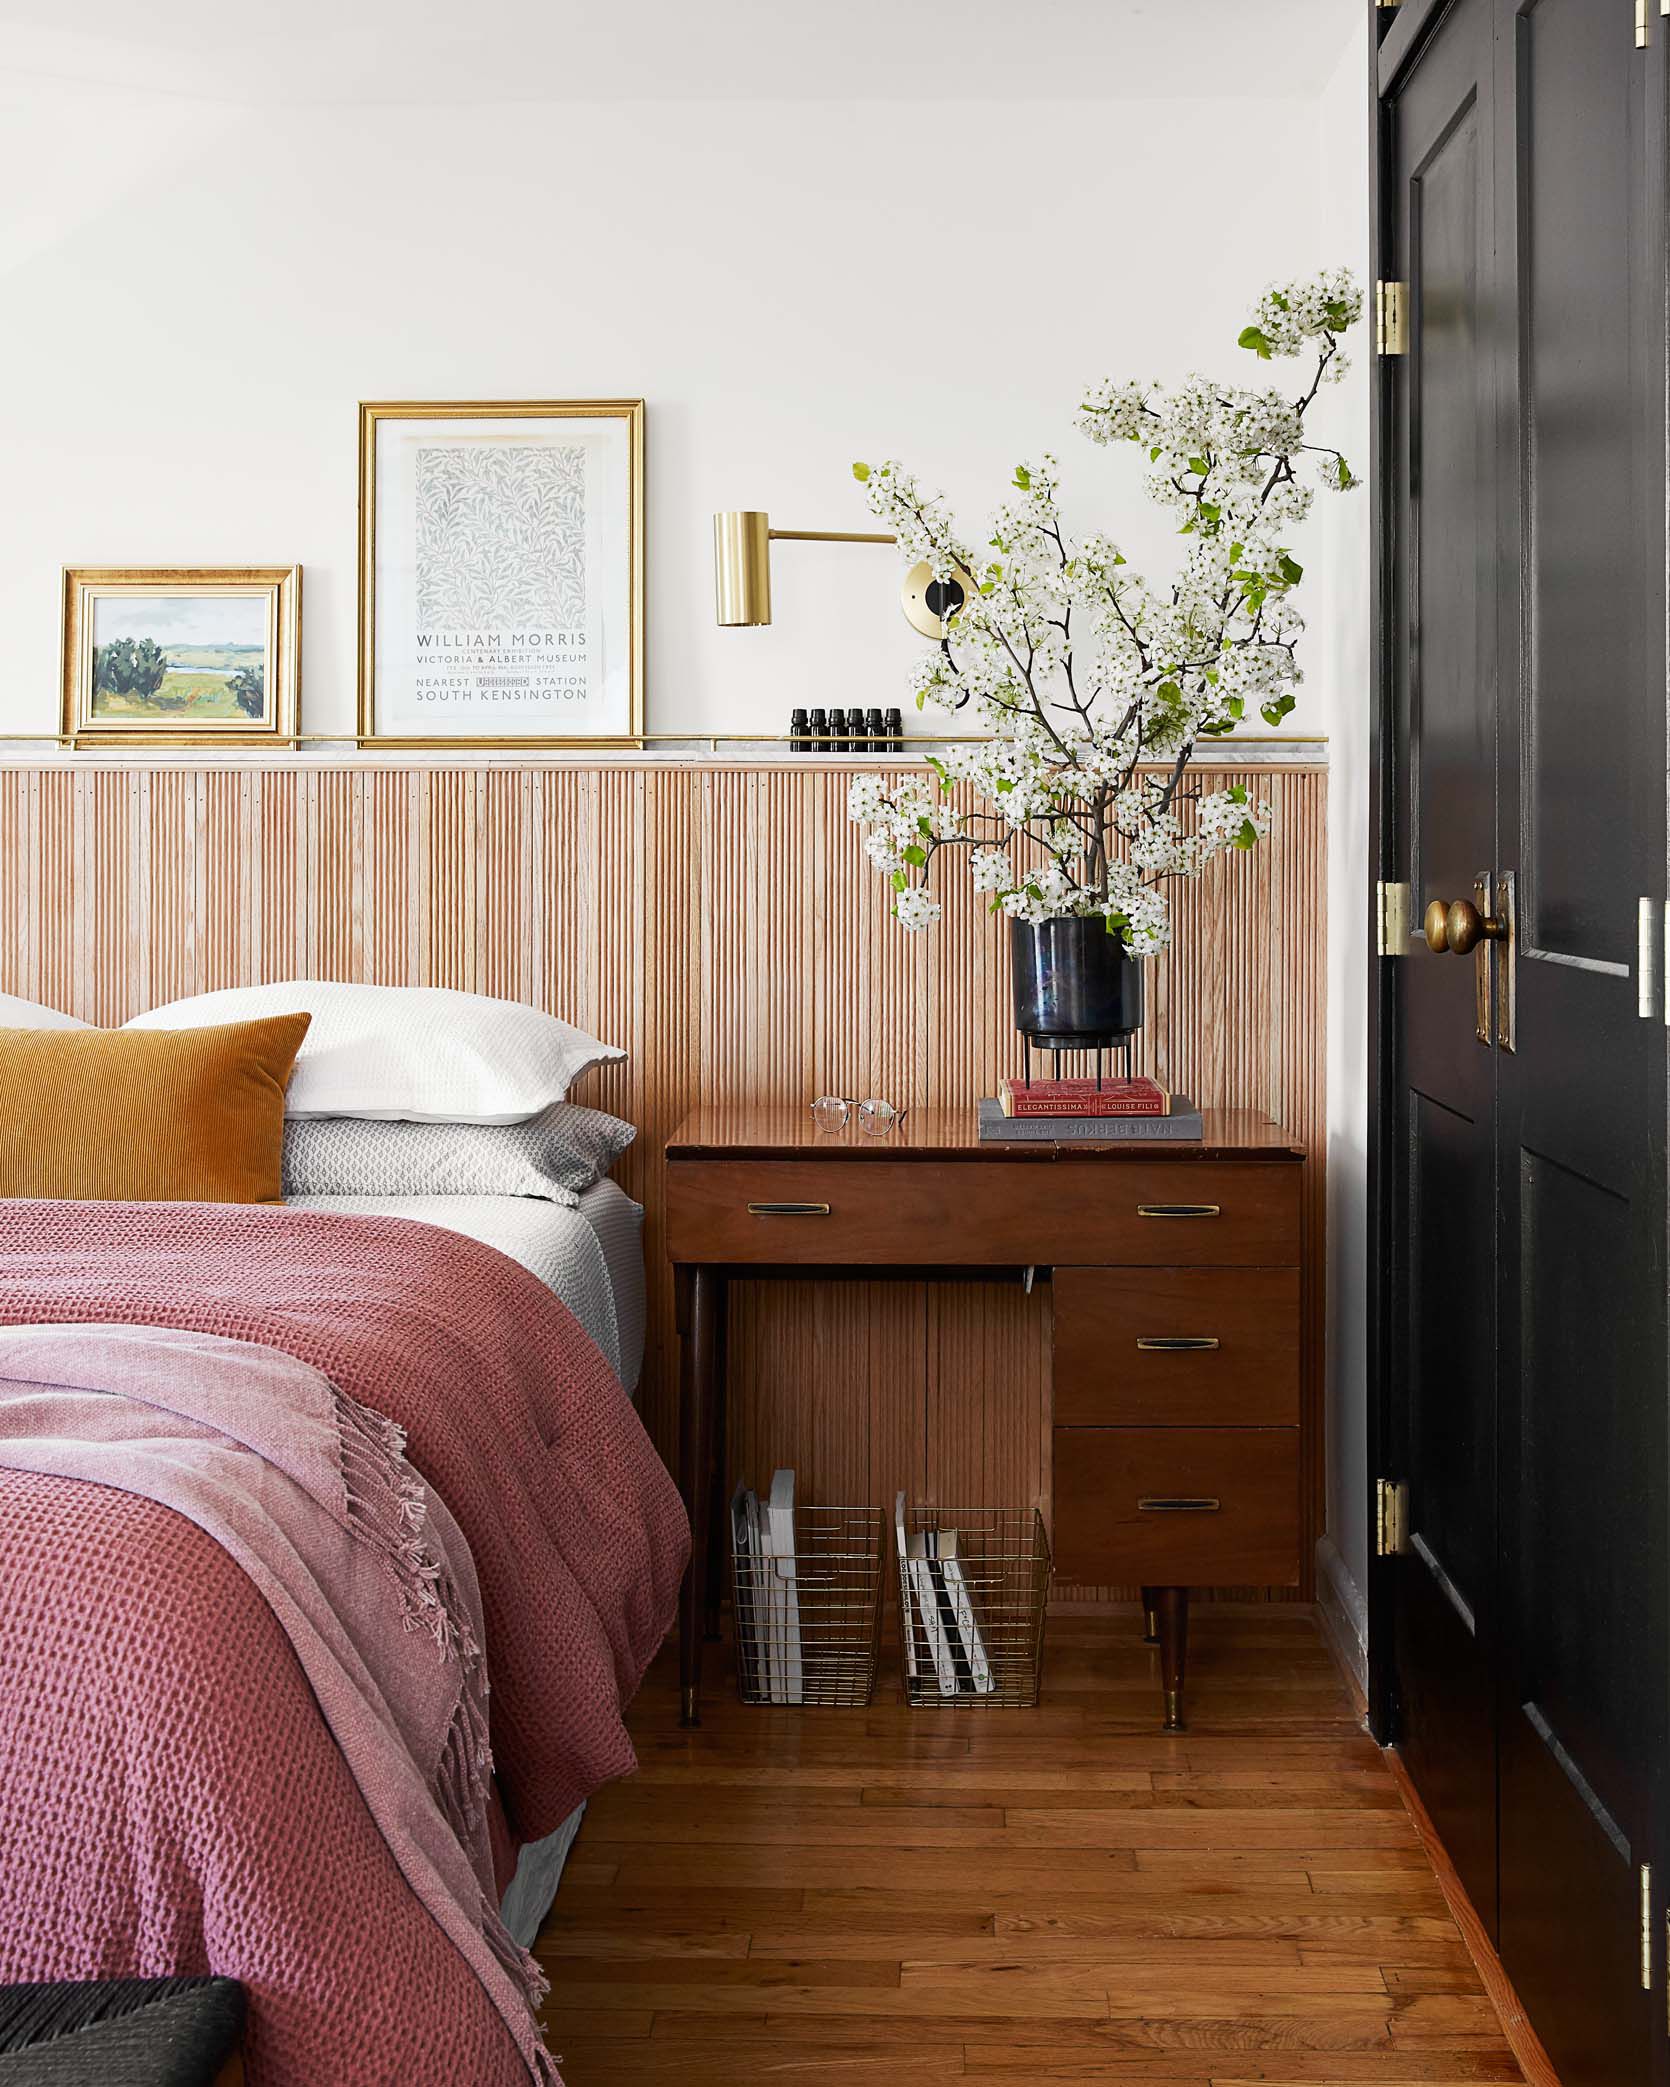 Vẫn là vật liệu gỗ ốp tường cho khu vực đầu giường nhưng phòng ngủ này khoác lên mình vẻ trẻ trung hơn nhờ kết hợp một phần sơn tường và một phần ốp gỗ. Tấm gỗ được tạo nên từ những thanh sọc nhỏ cho hiệu ứng sinh động.